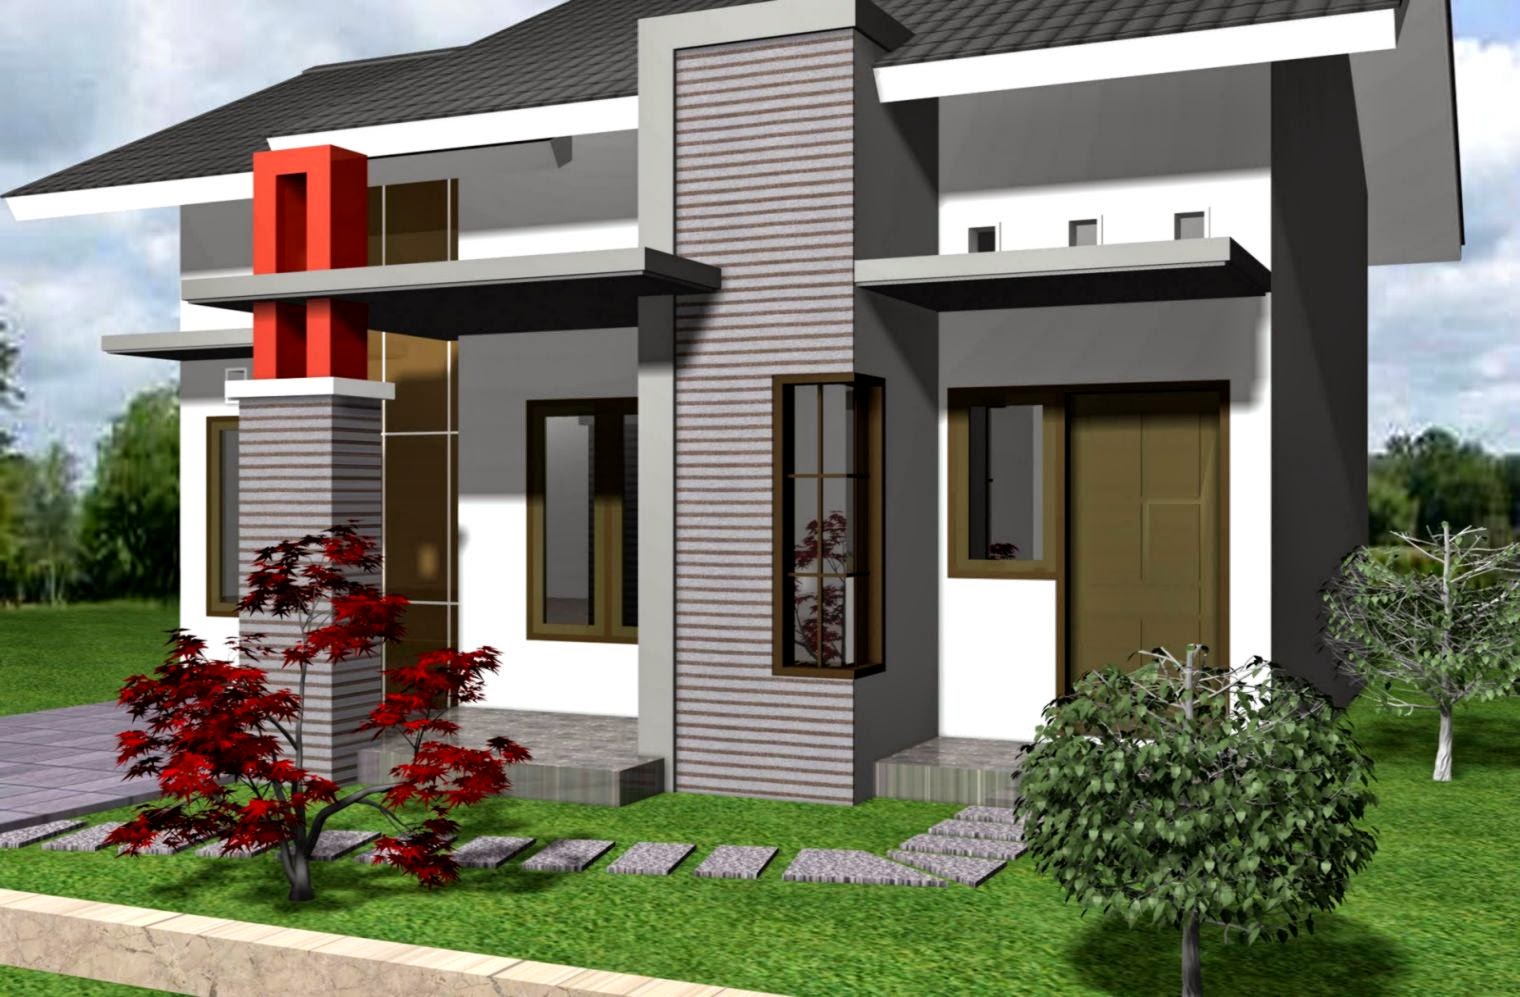 Foto Model Rumah Minimalis Terbaru | Design Rumah Minimalis